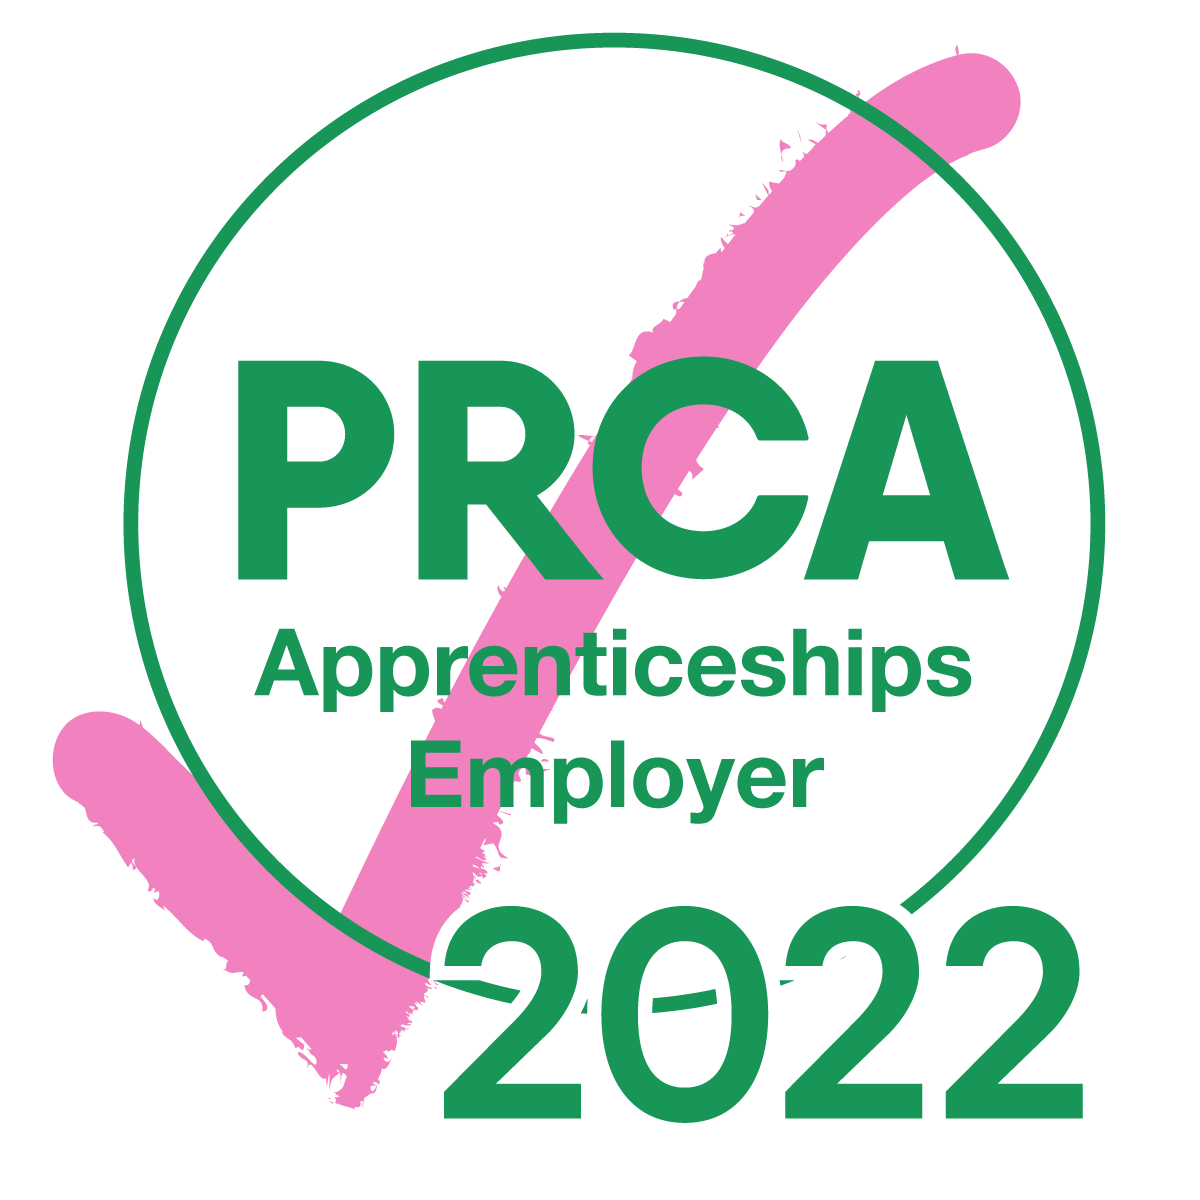 PRCA Apprenticeships Employer